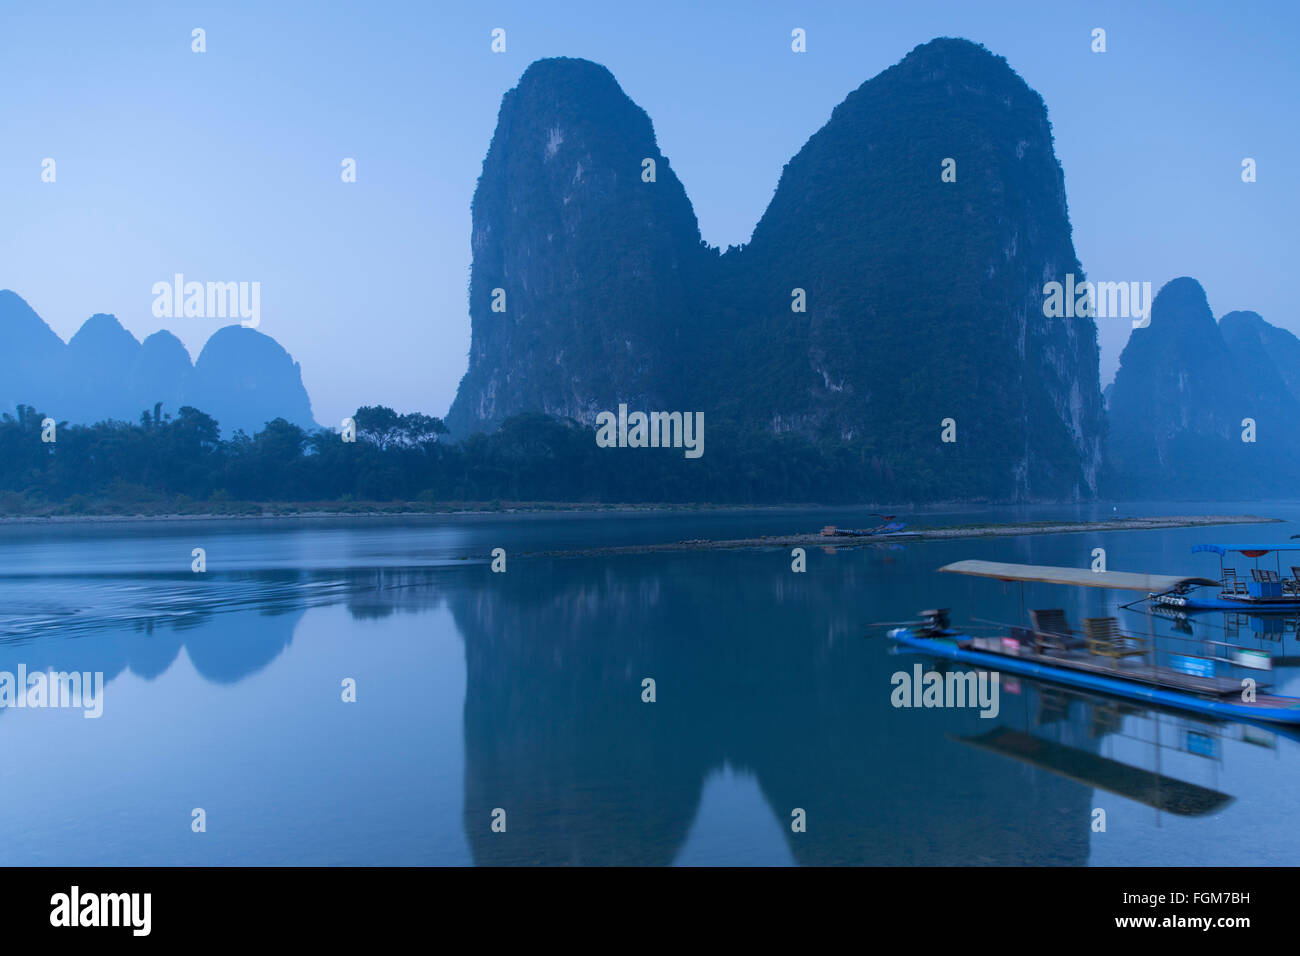 Li River at dawn, Xingping, Yangshuo, Guangxi, China Stock Photo